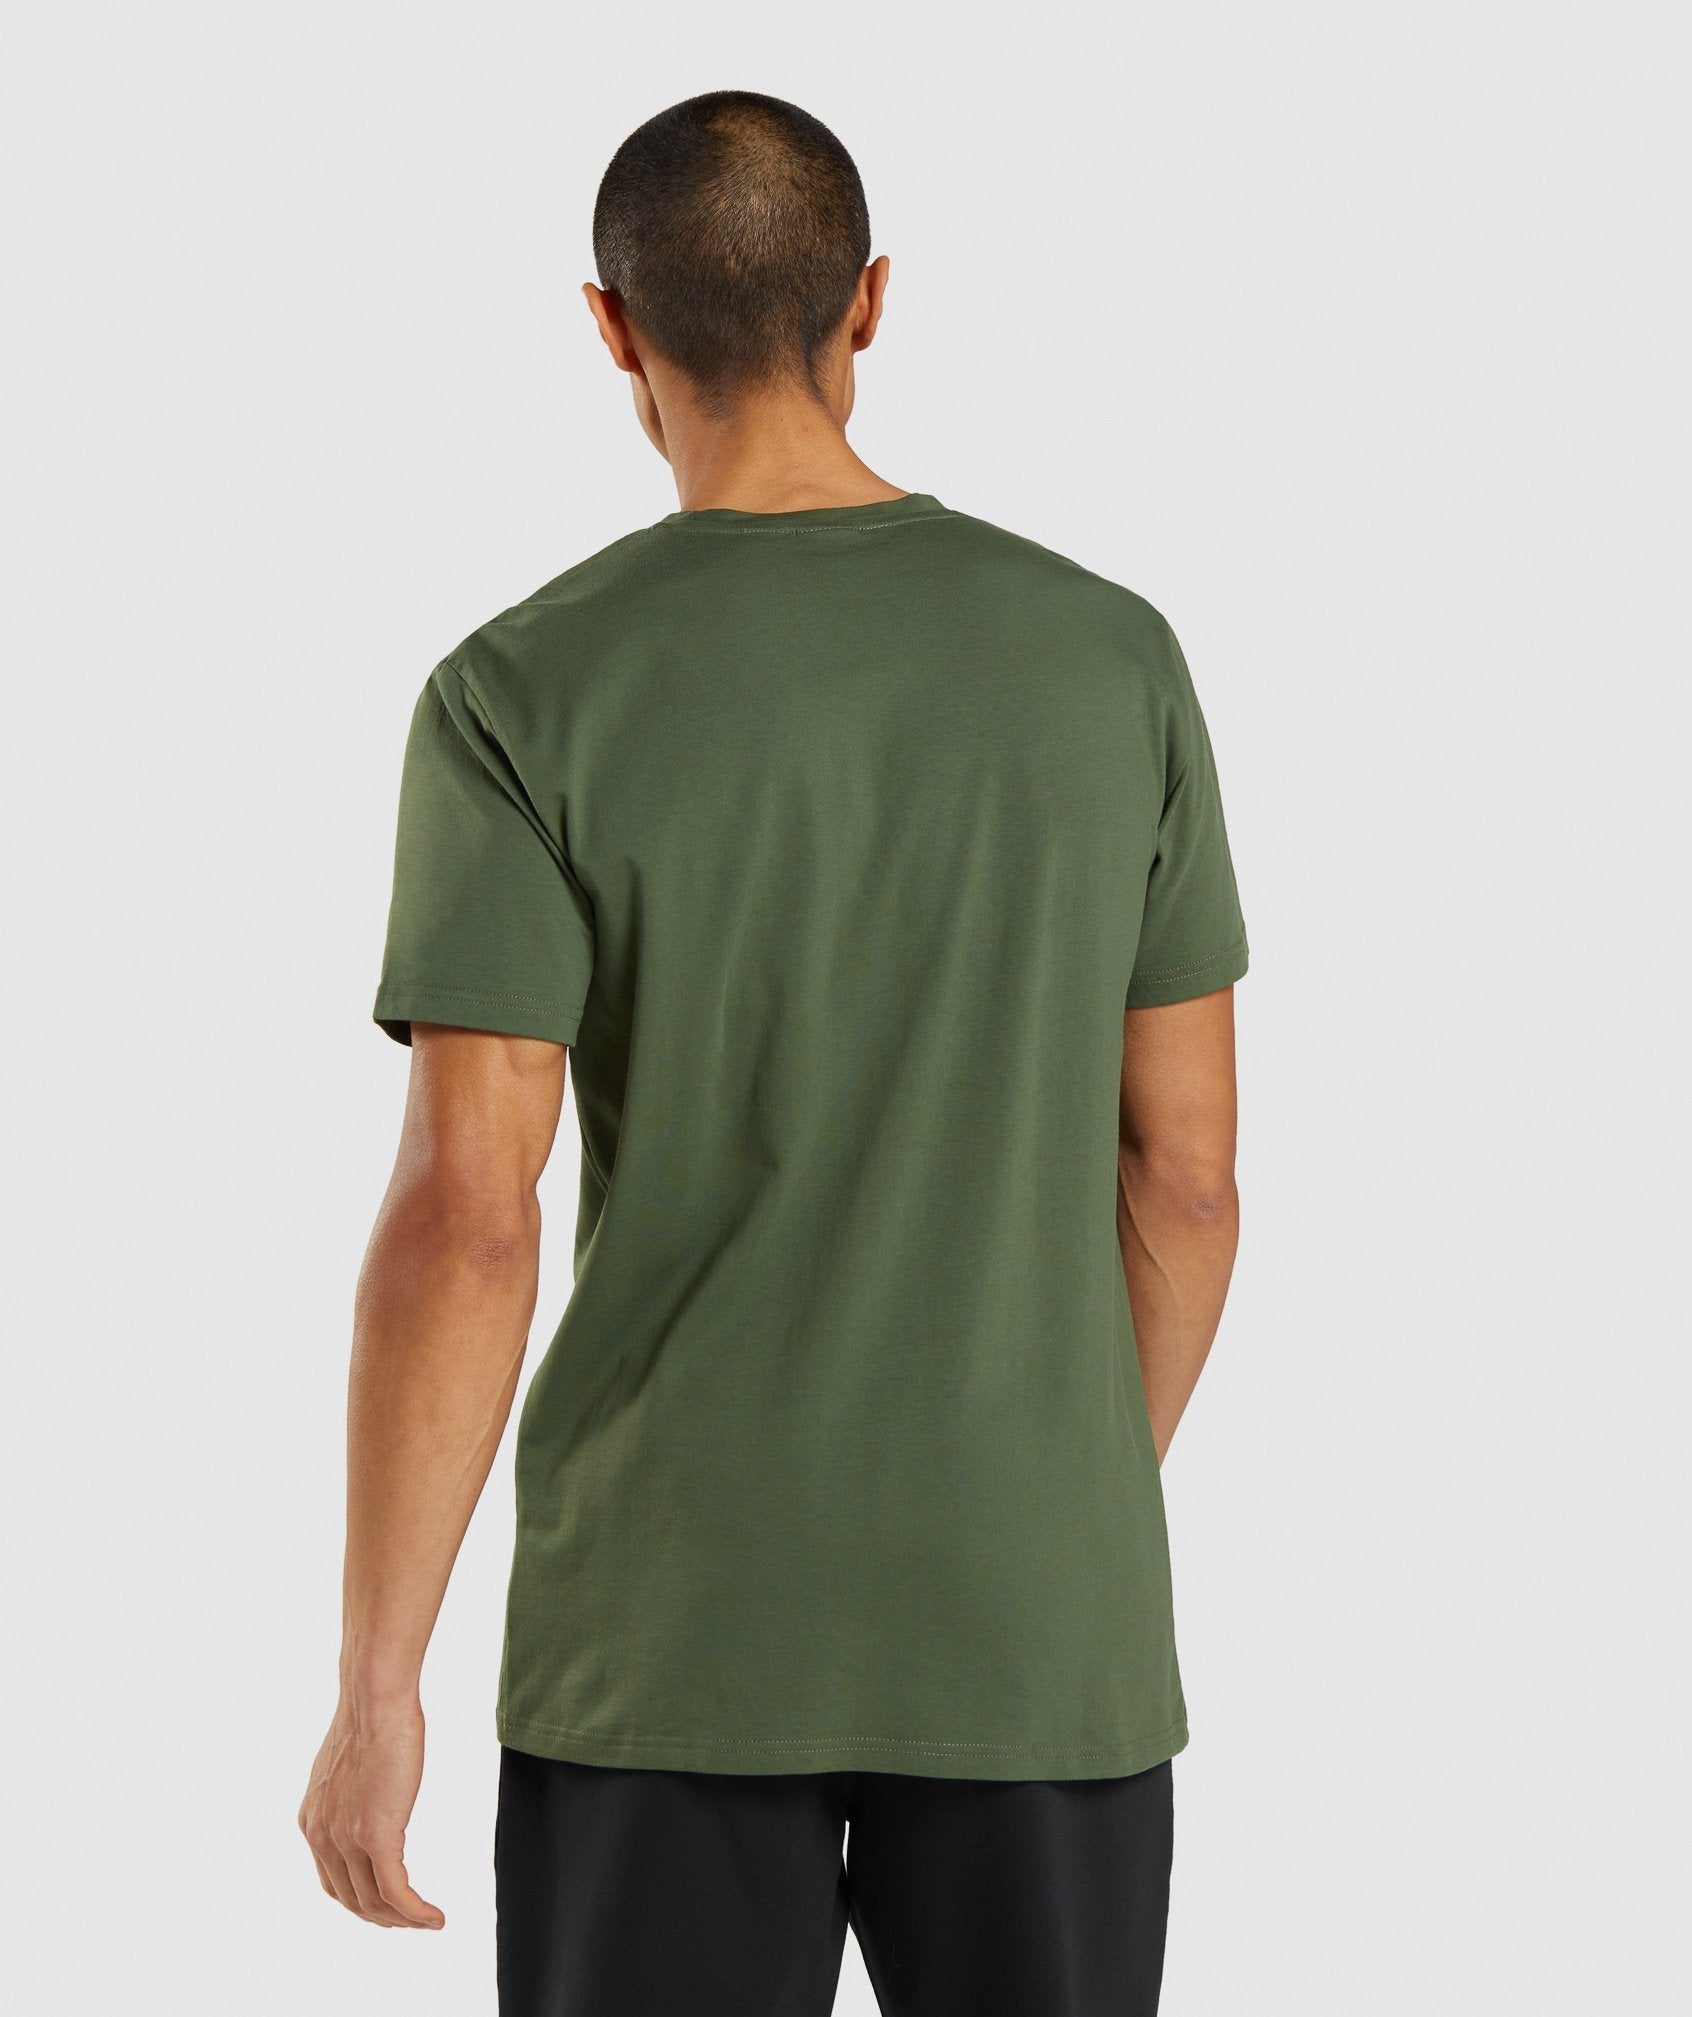 Sharkhead Infill T-Shirt in Green - view 2